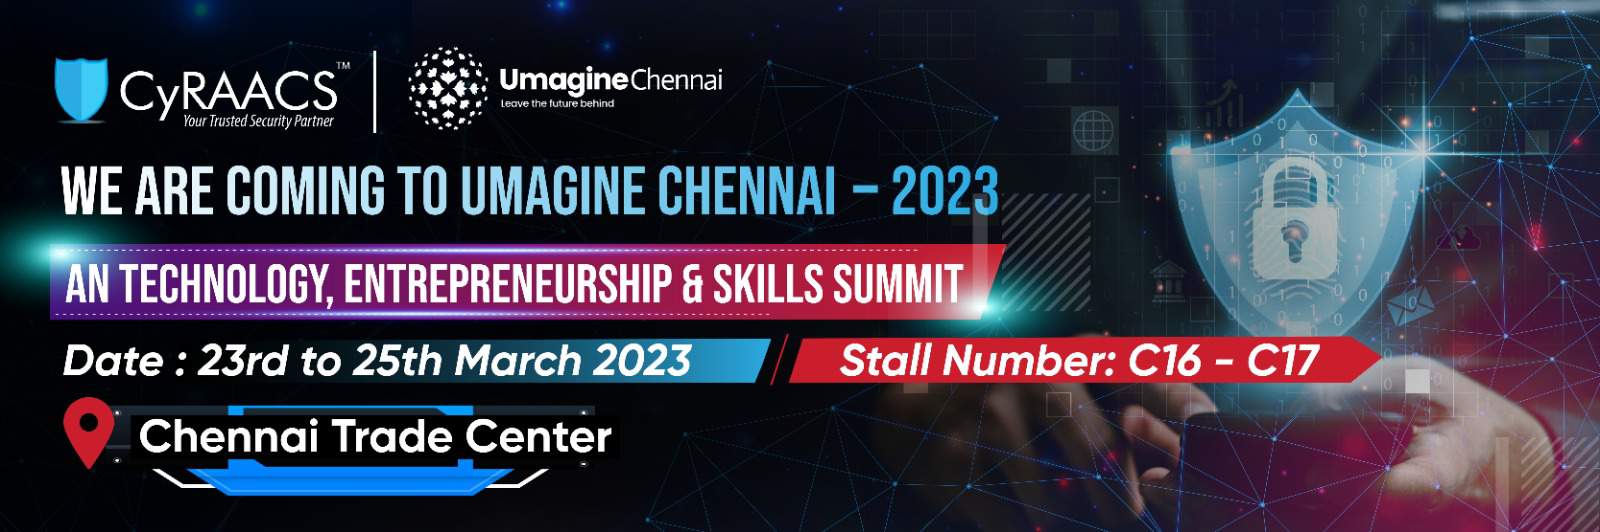 CyRAACS-Umagine-Chennai-2023-banner